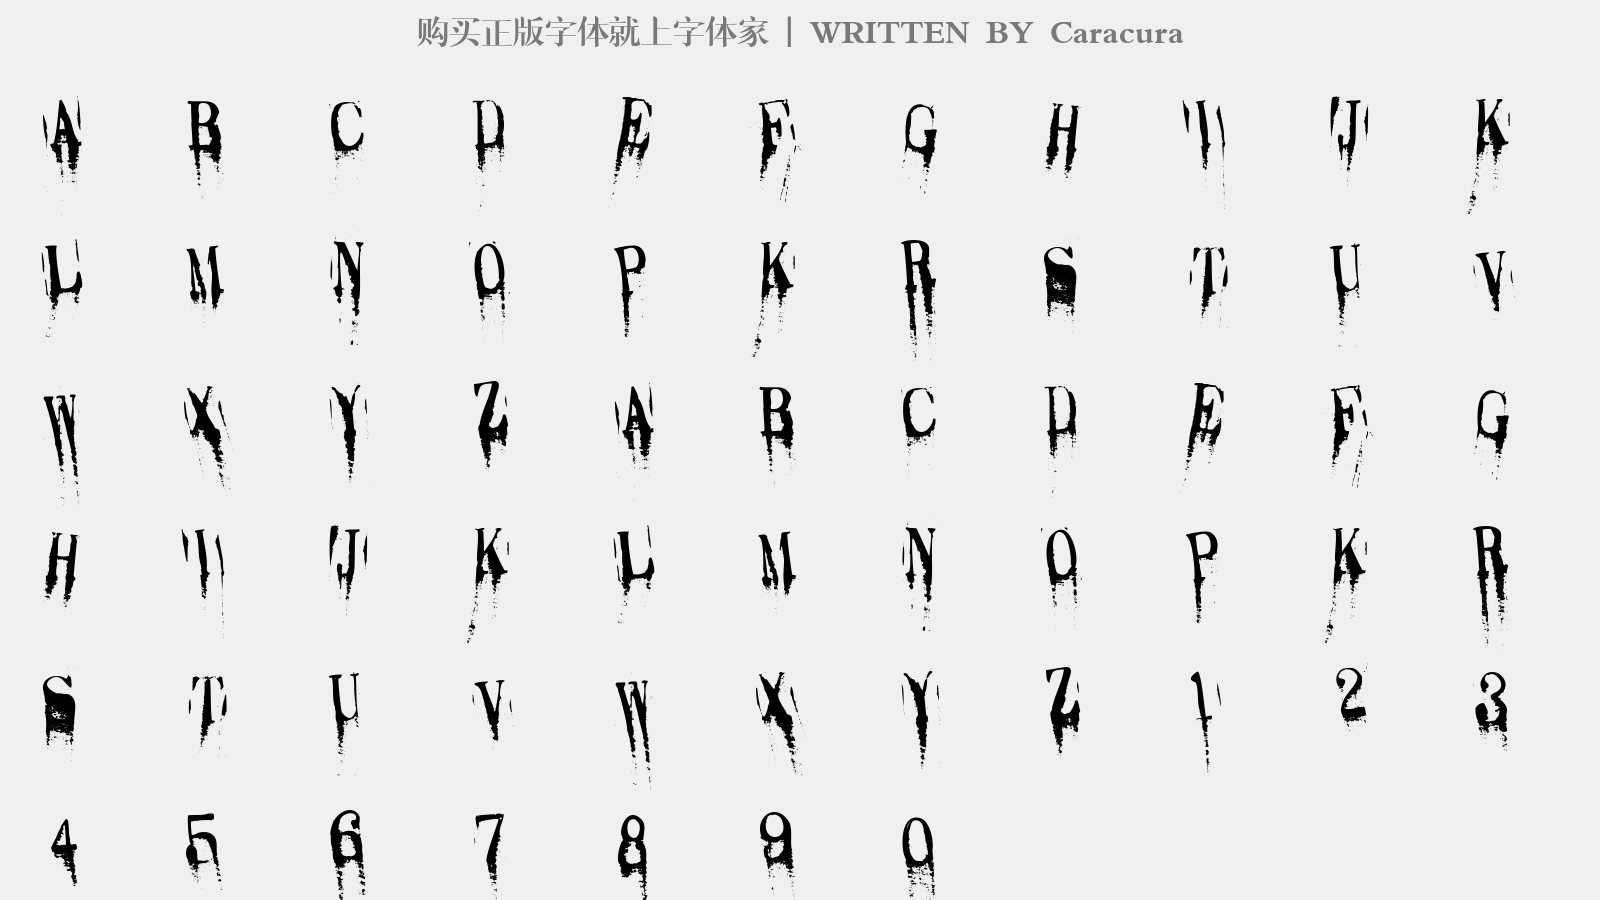 Caracura - 大写字母/小写字母/数字